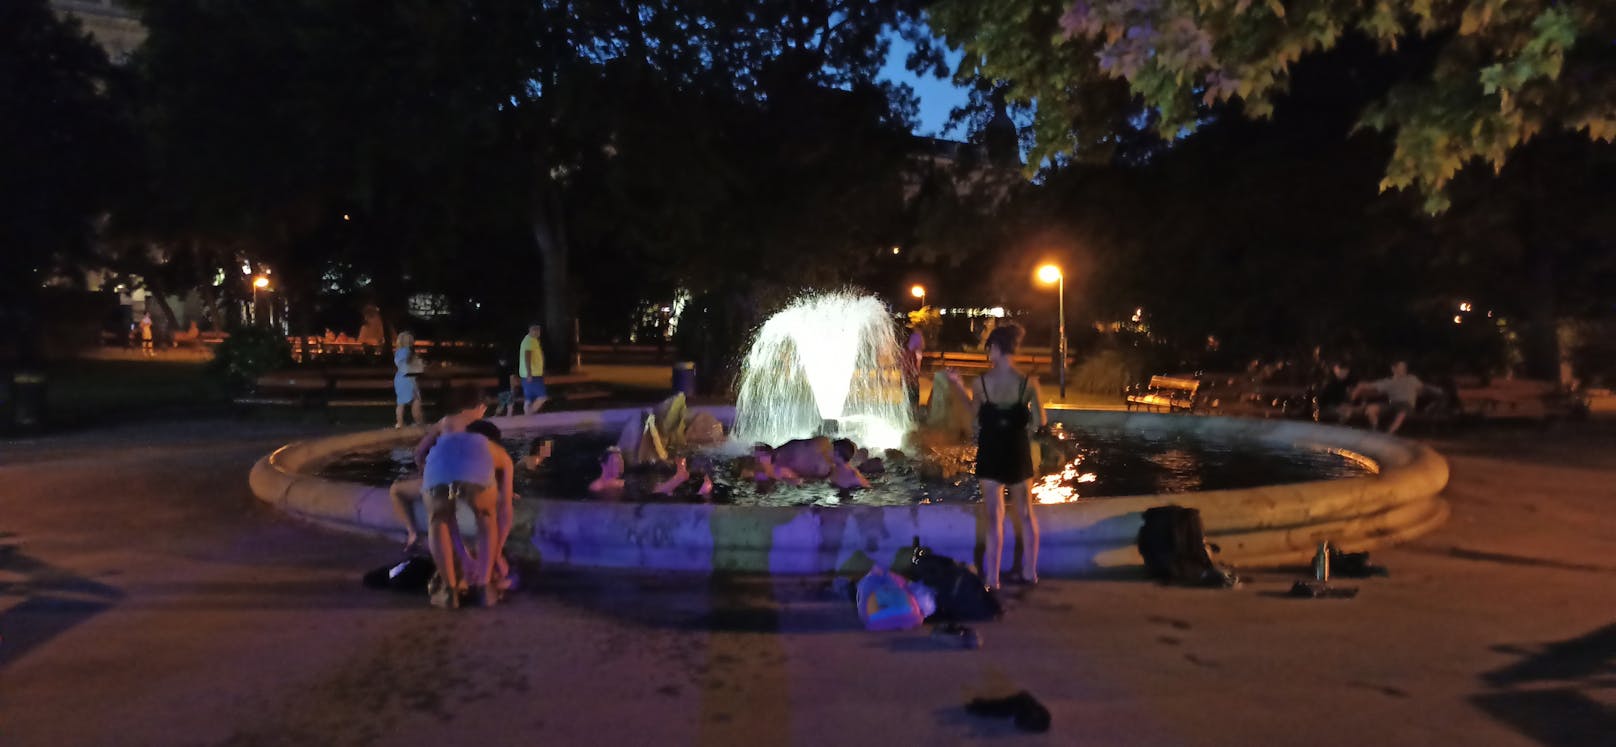 Jugendliche suchten Abkühlung in einem Brunnen im Rathauspark